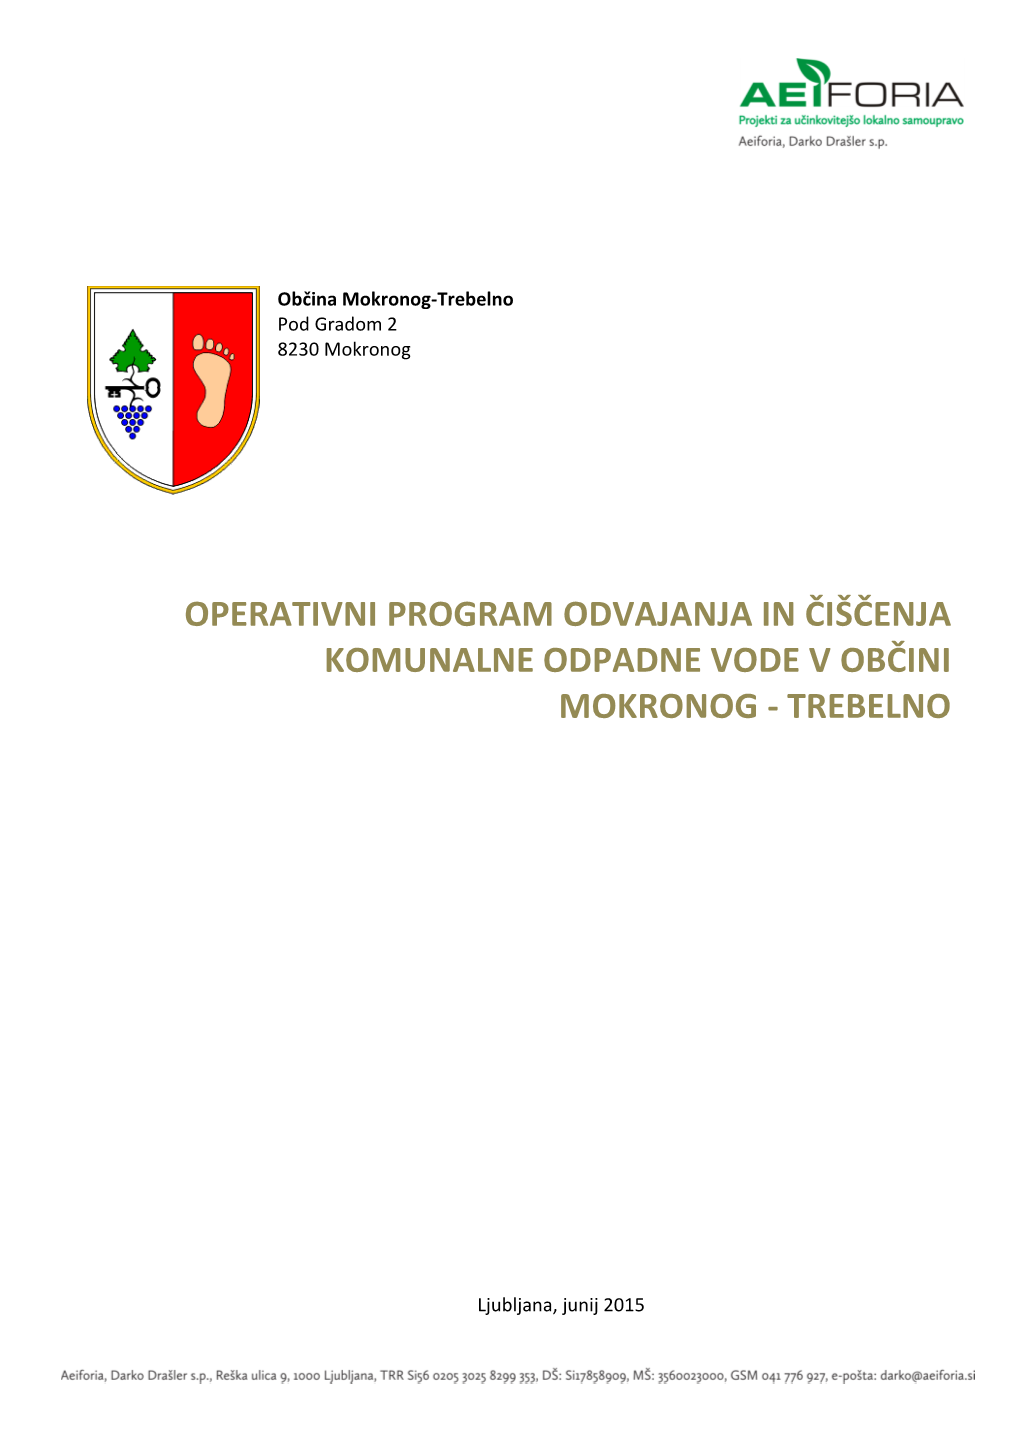 Operativni Program Odvajanja in Čiščenja Komunalne Odpadne Vode V Občini Mokronog - Trebelno